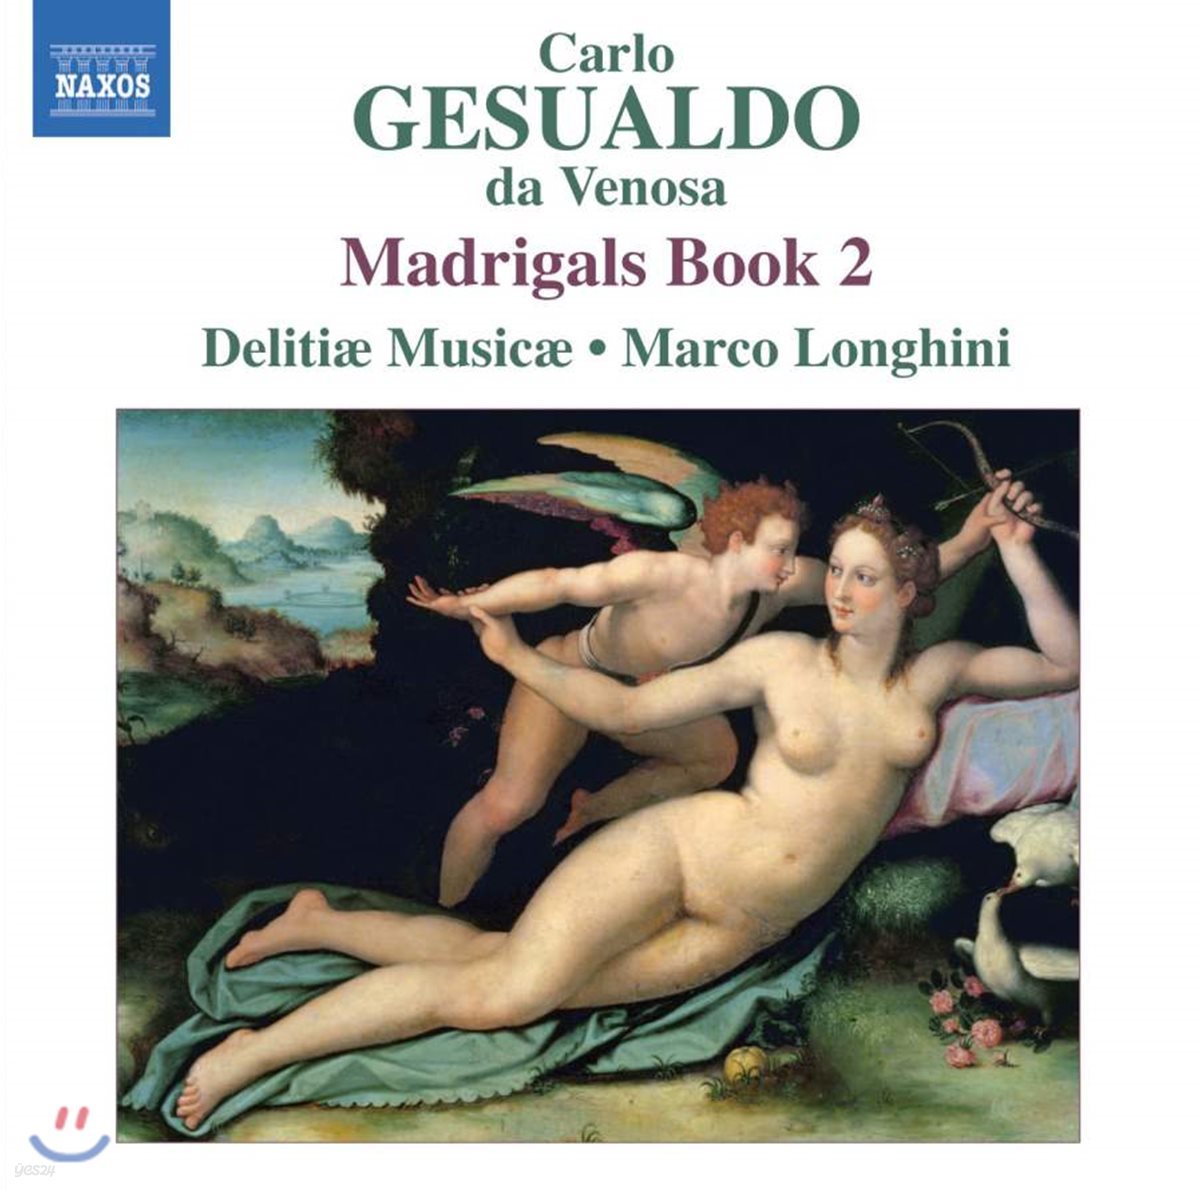 Delitiae Musicae 제수알도: 마드리갈 2권 (Gesualdo: Madrigali libro secondo, 1594)